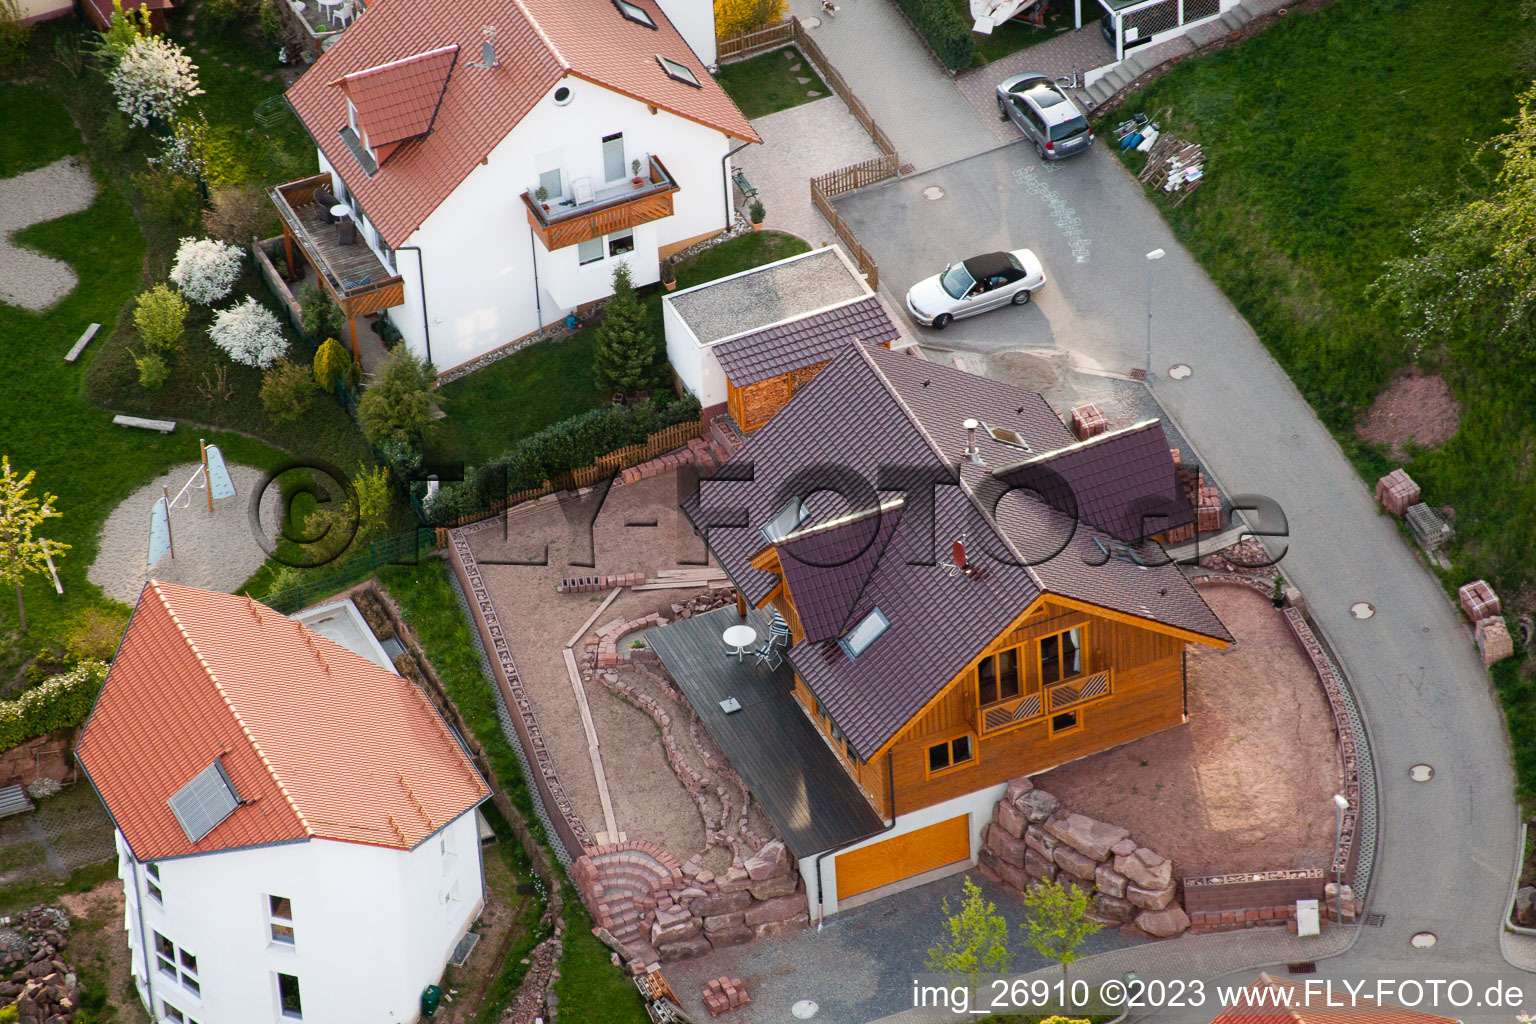 Ortsteil Völkersbach in Malsch im Bundesland Baden-Württemberg, Deutschland von der Drohne aus gesehen